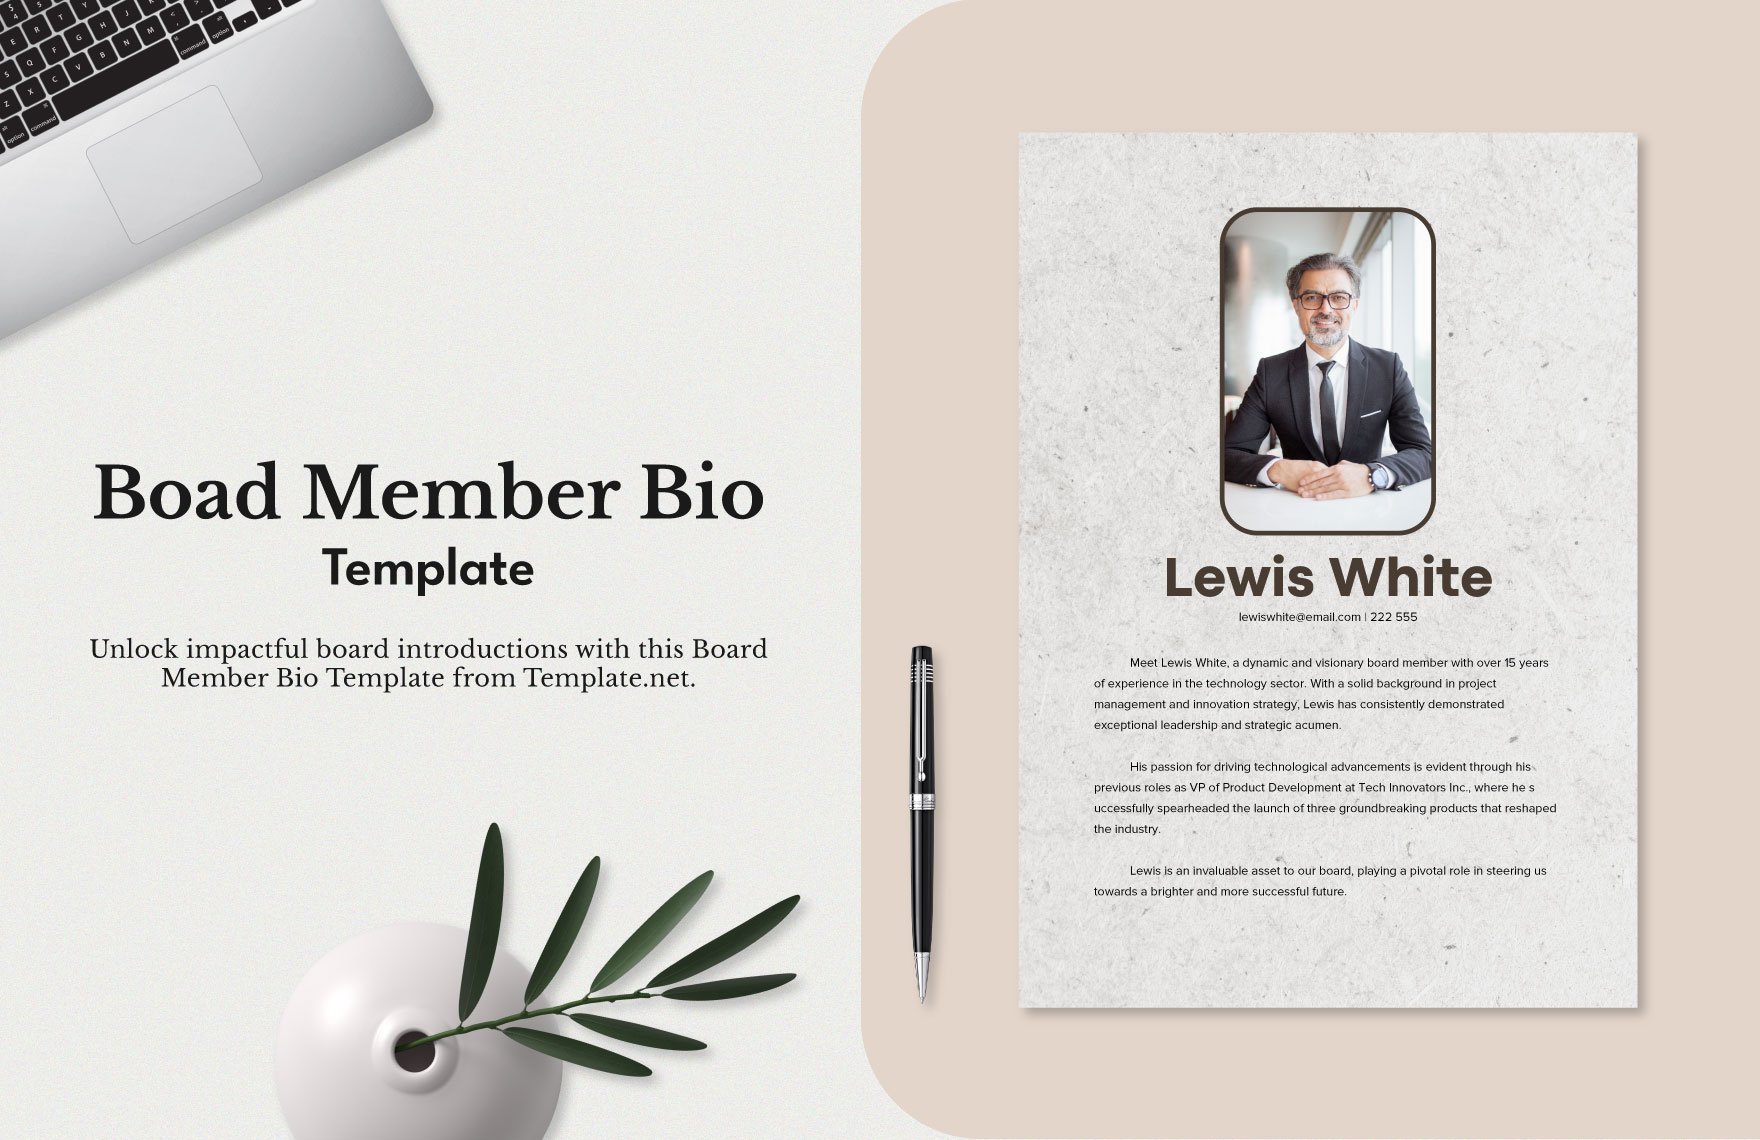 Board Member Bio Template Download in Word, Illustrator, PSD, PNG